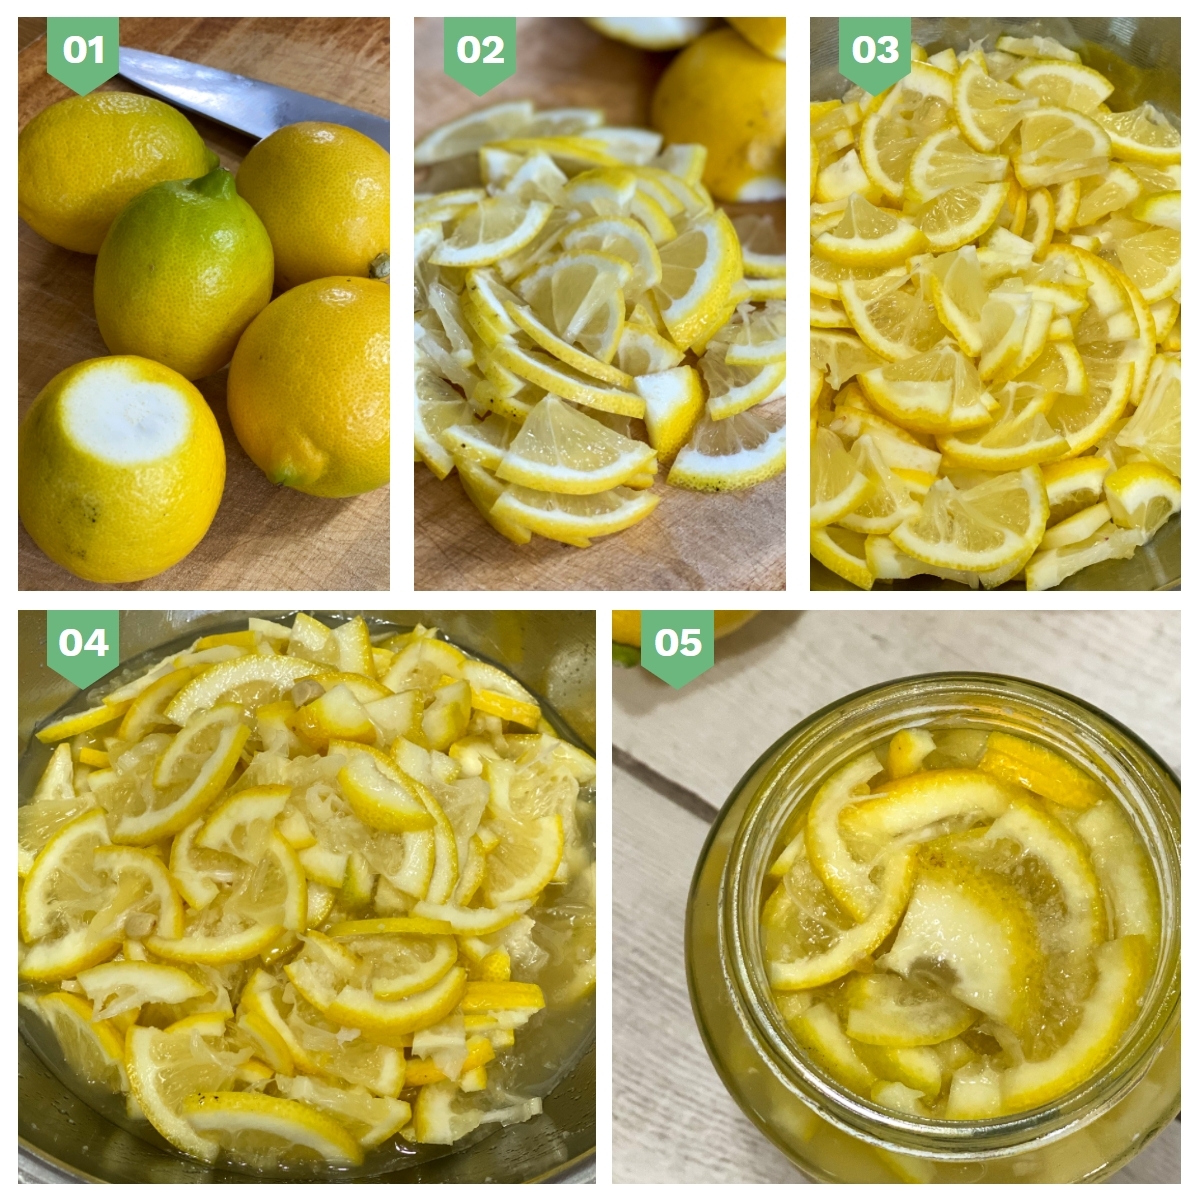 제주 무농약레몬으로 레몬소금을 만드는 과정